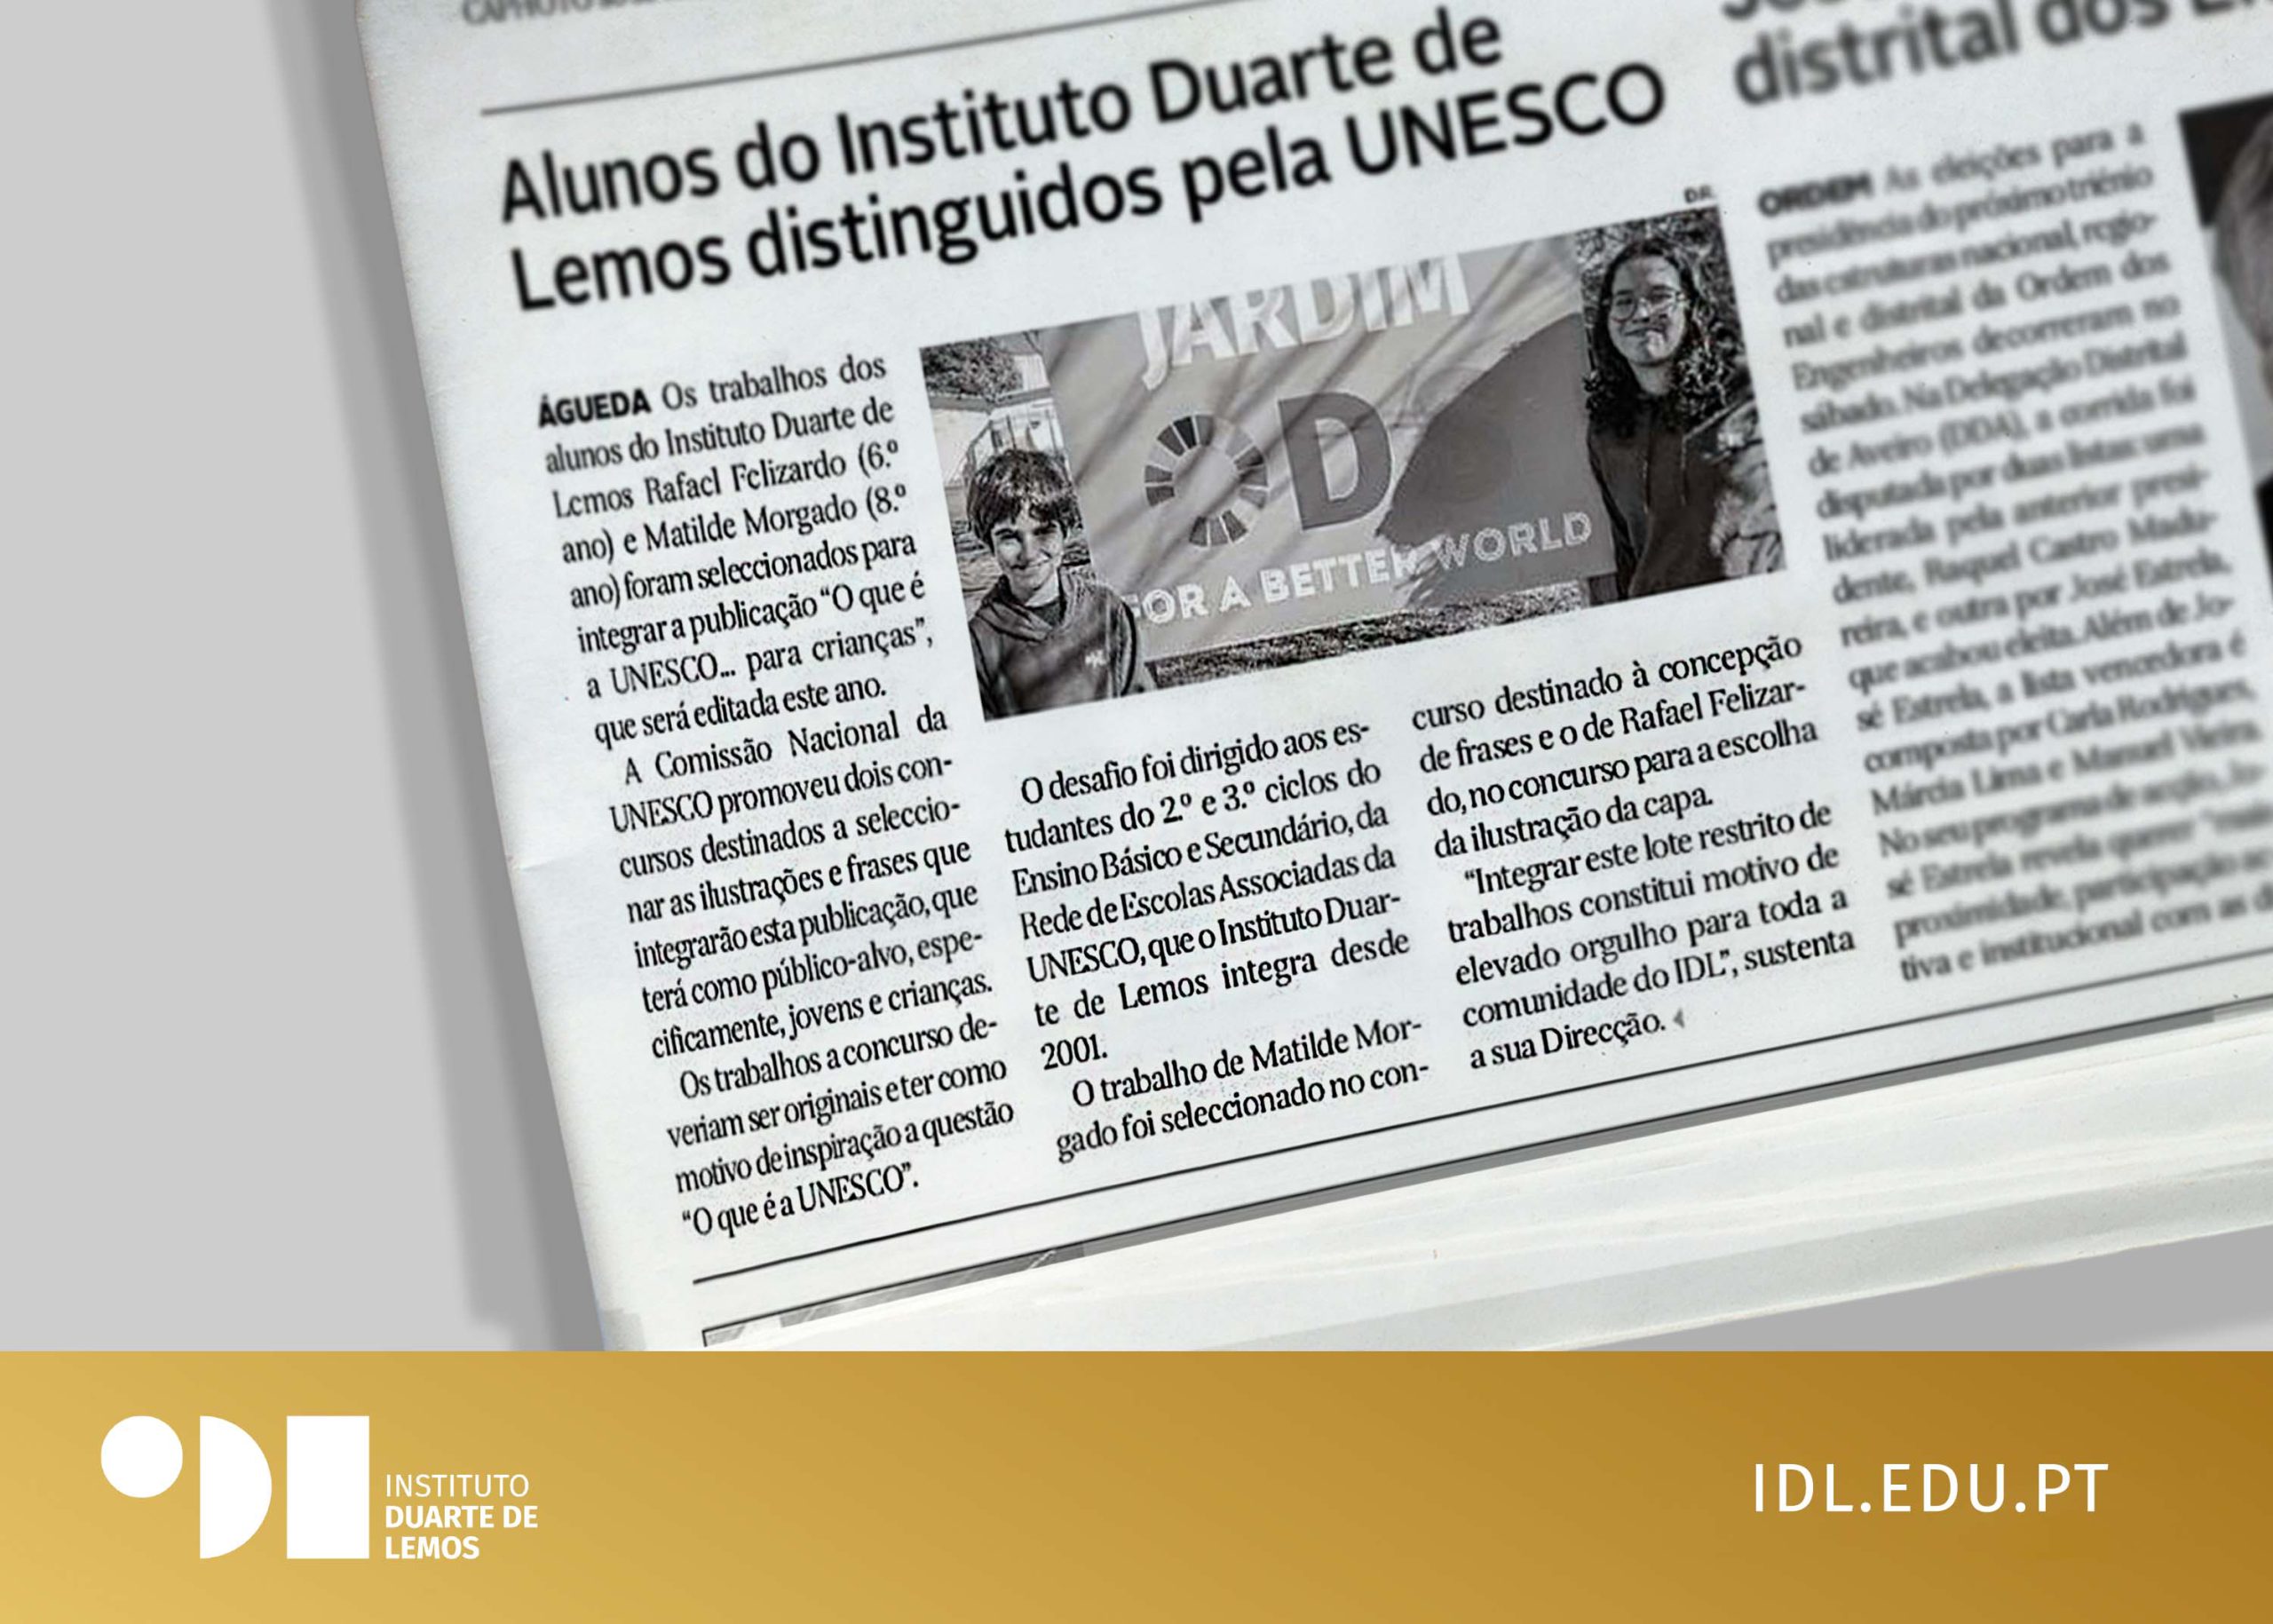 ALUNOS DO INSTITUTO DUARTE DE LEMOS DISTINGUIDOS PELA UNESCO